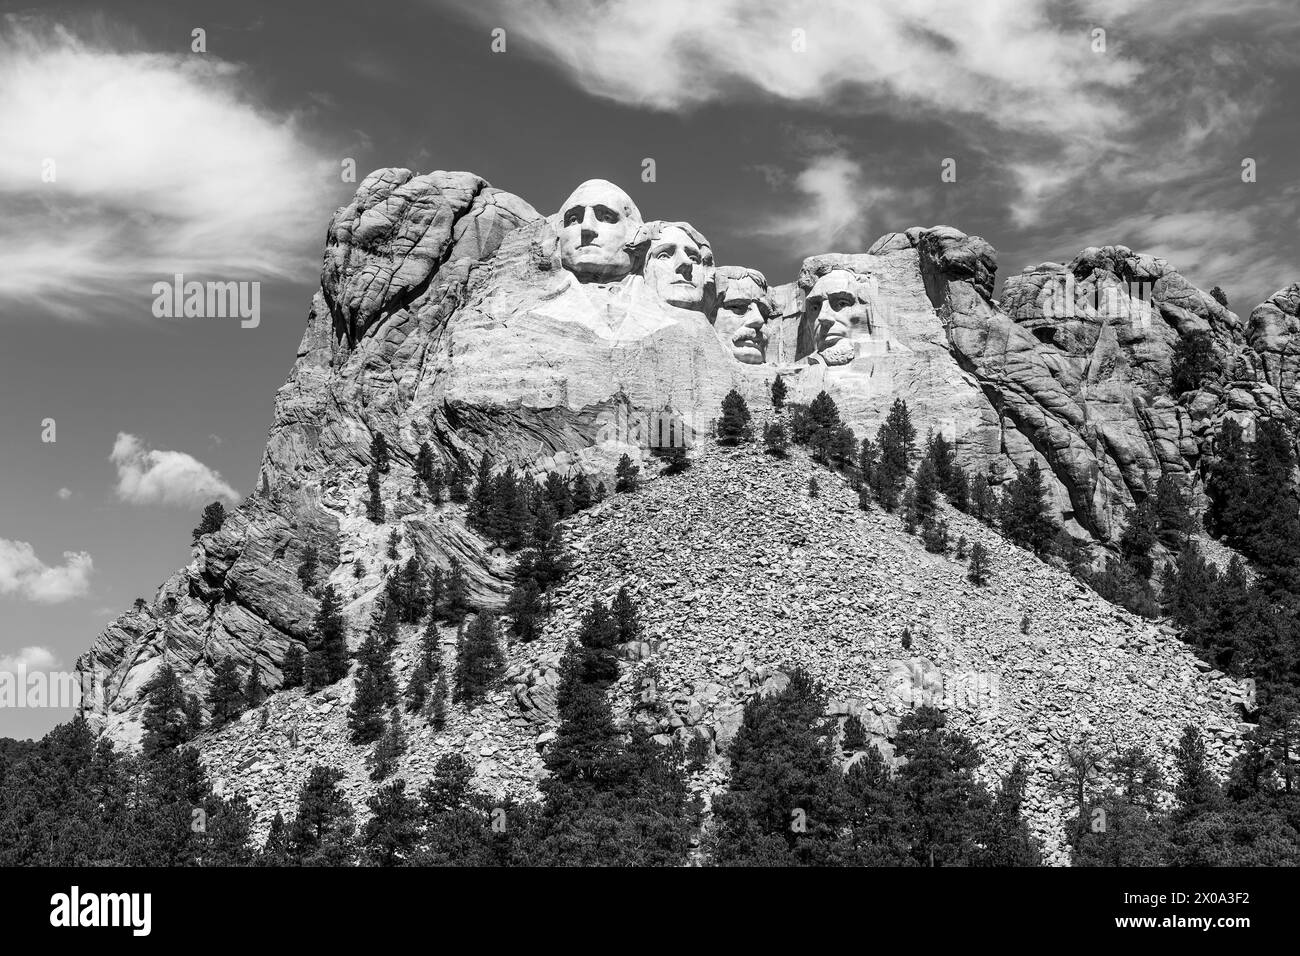 Mount Rushmore National Monument in Schwarz-weiß, Rapid City, South Dakota, Vereinigte Staaten von Amerika, USA. Stockfoto